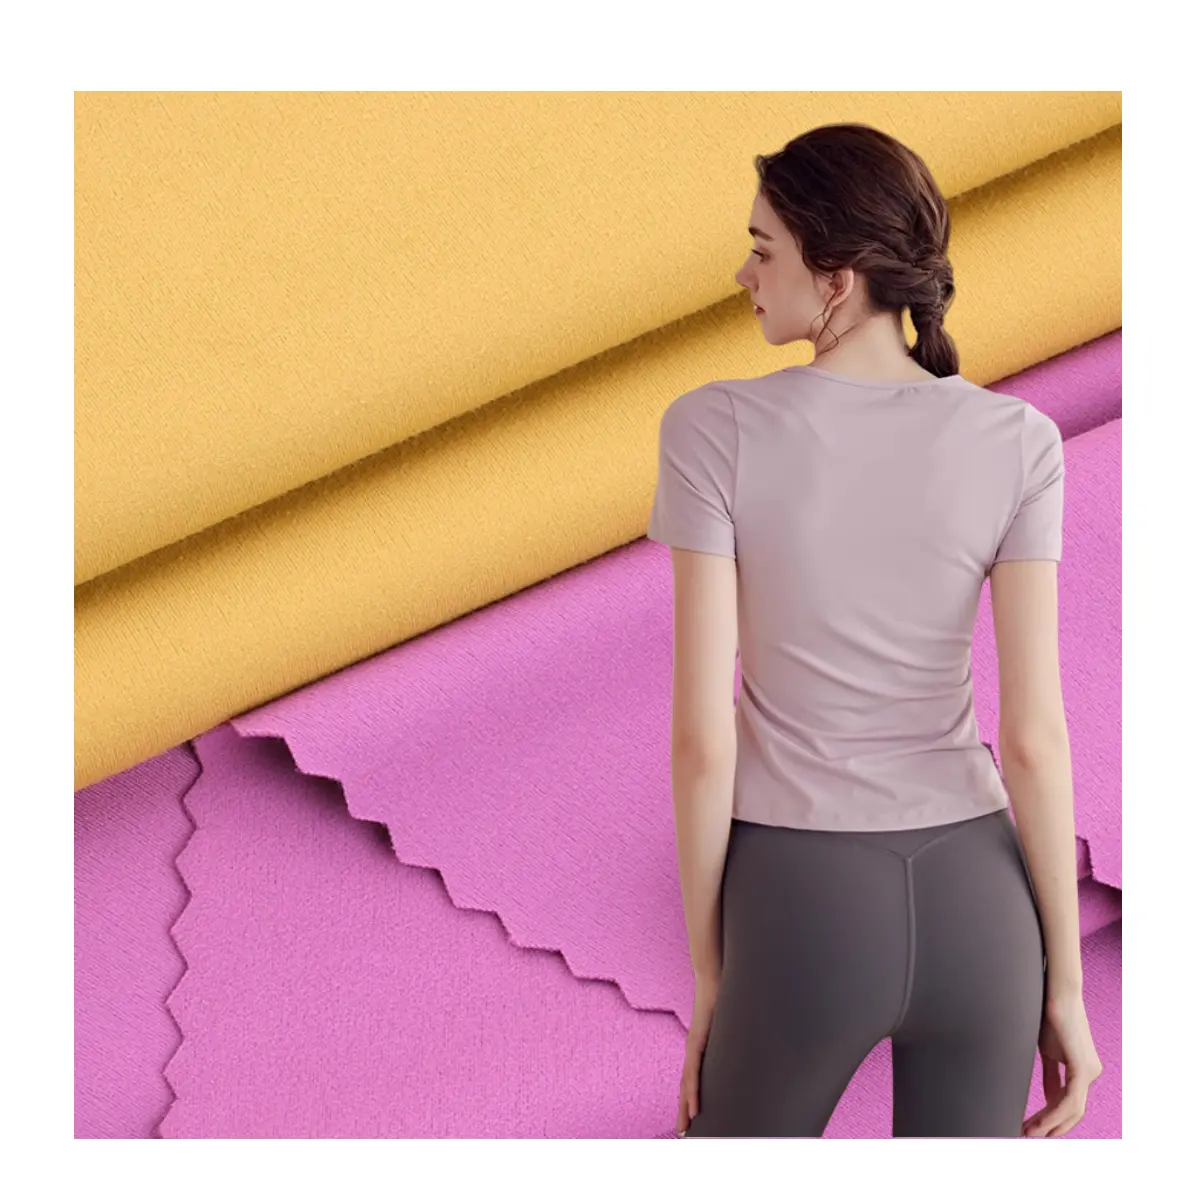 लुलु ठोस रंग बुनाई 4 तरह से 75 नायलॉन 25 स्पैन्डेक्स जर्सी कपड़े स्विमवियर योग पैंट स्पोर्टी लेगिंग